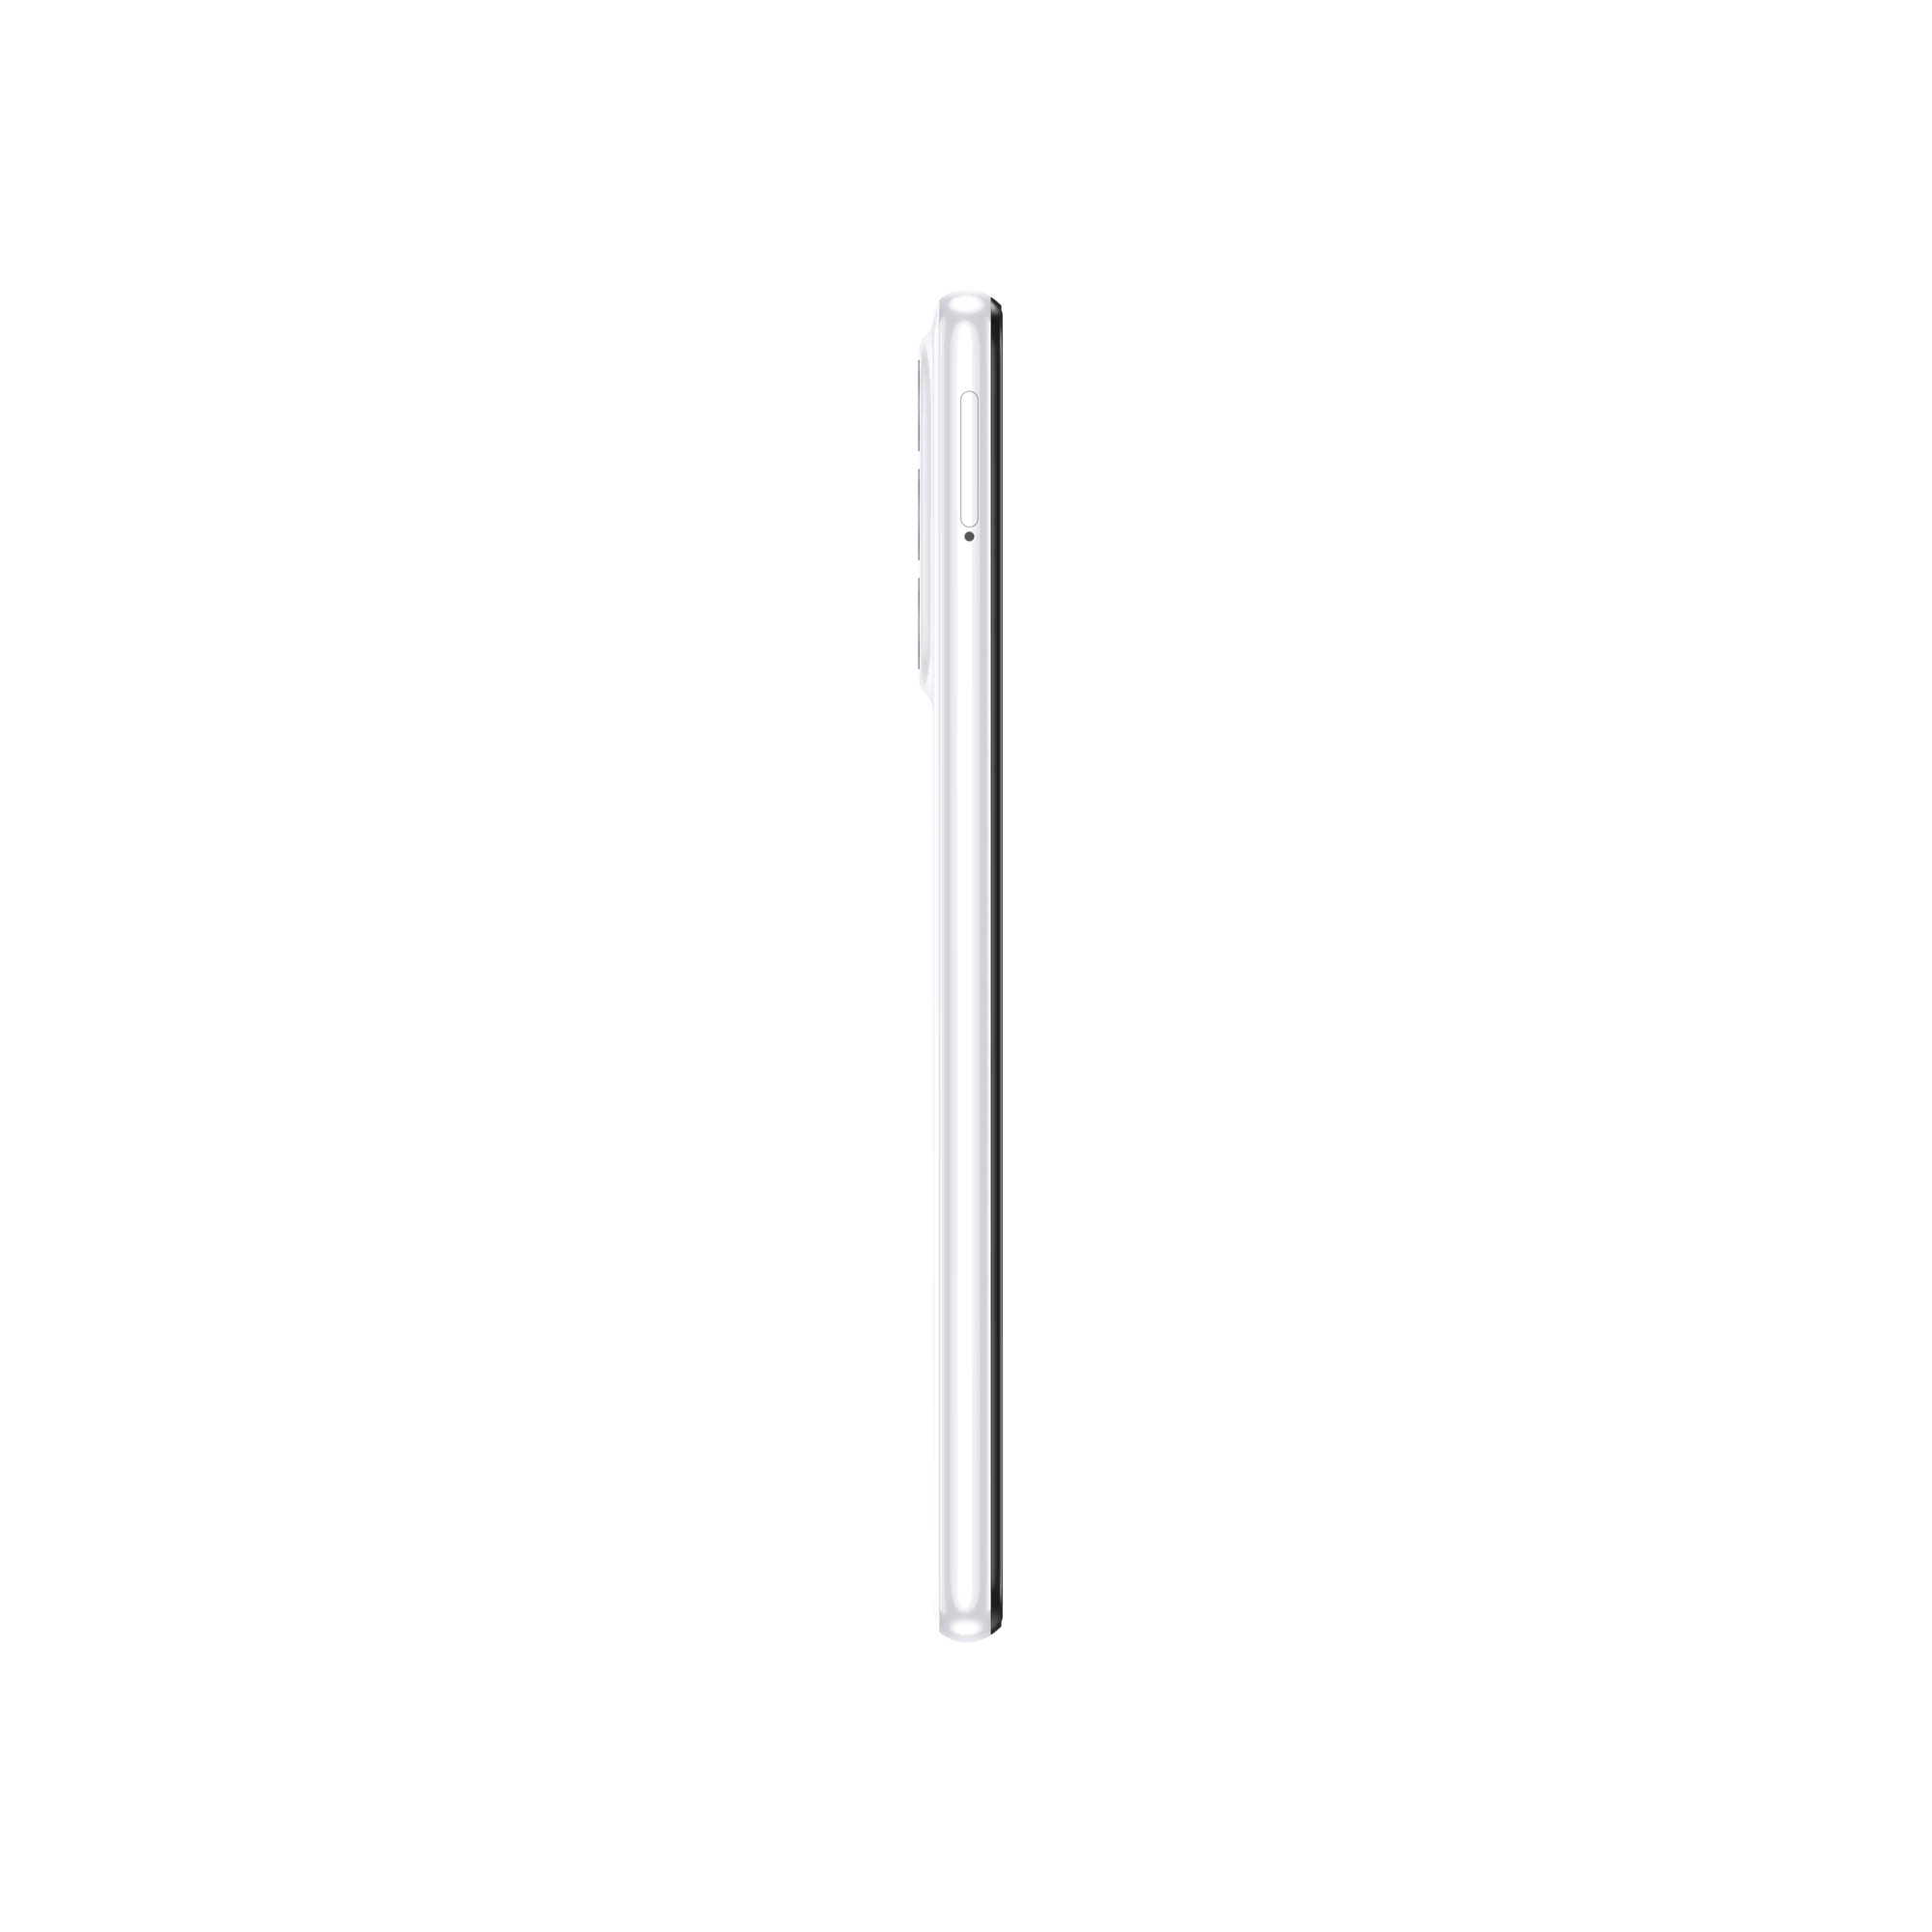 SAMSUNG Galaxy A23 6GB/128GB Beyaz Android Telefon Modelleri